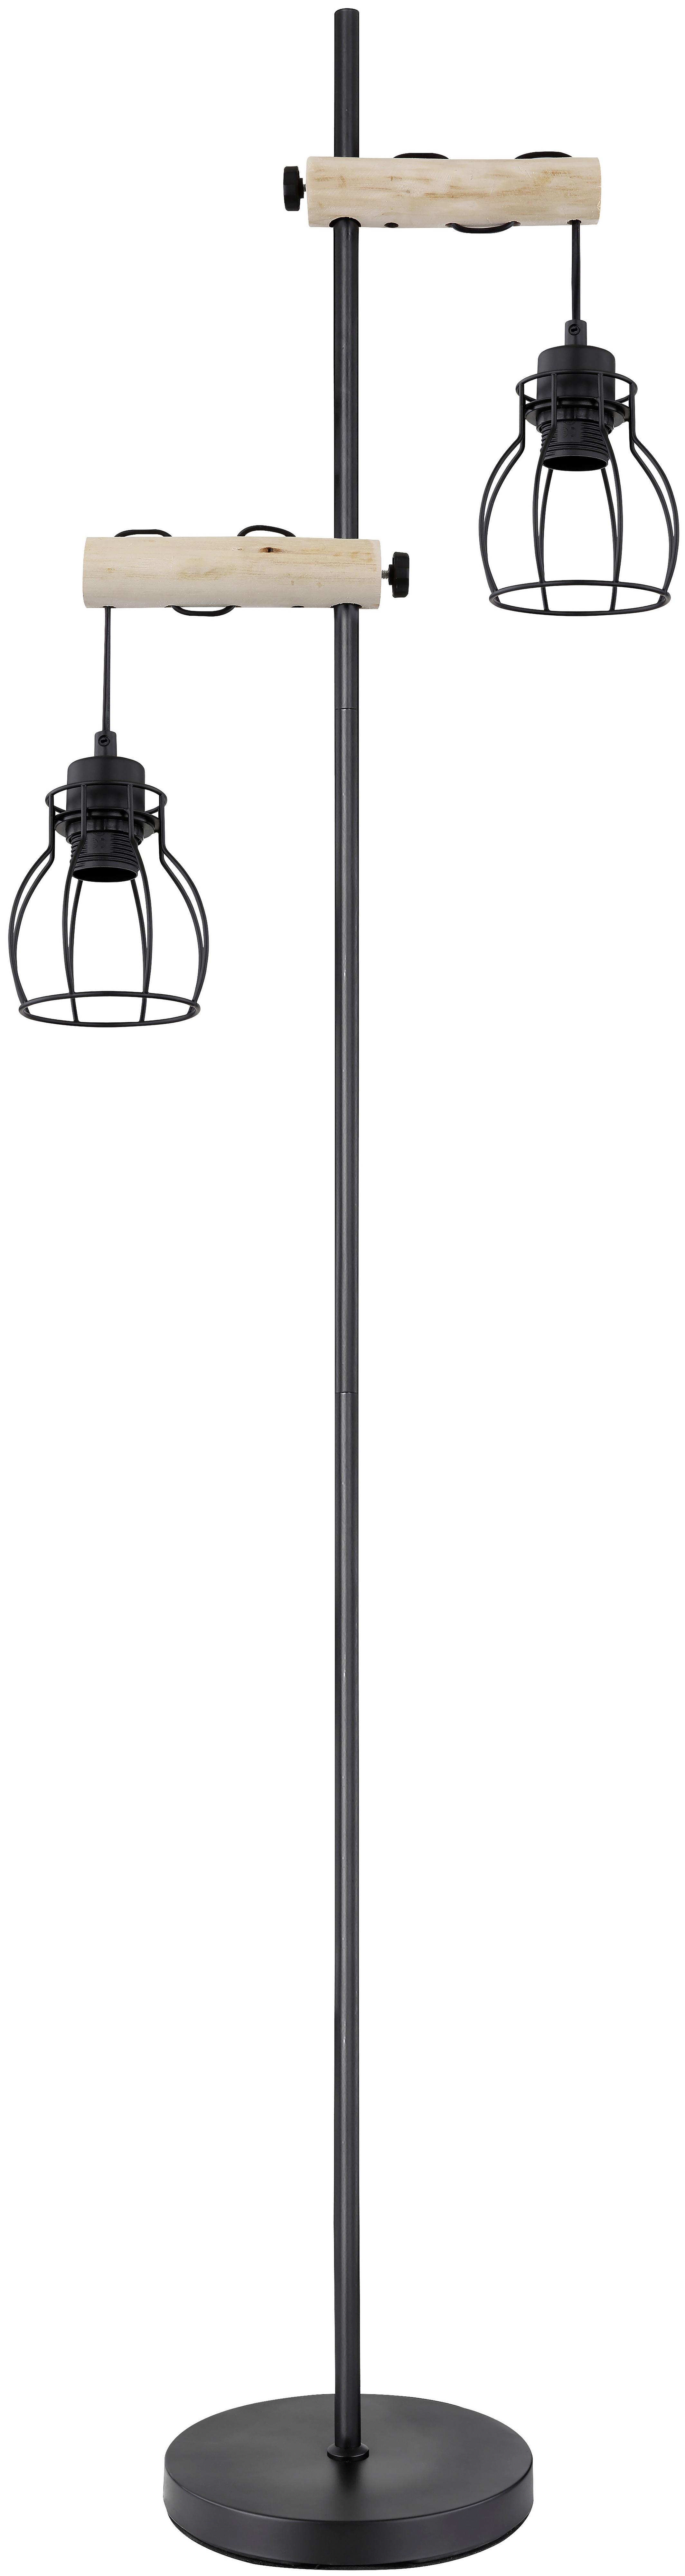 Stojací Lampa Aaliyah, Bez 2x E27 Max. 40w - černá/přírodní barvy, Romantický / Rustikální, kov/dřevo (23/150cm) - Modern Living